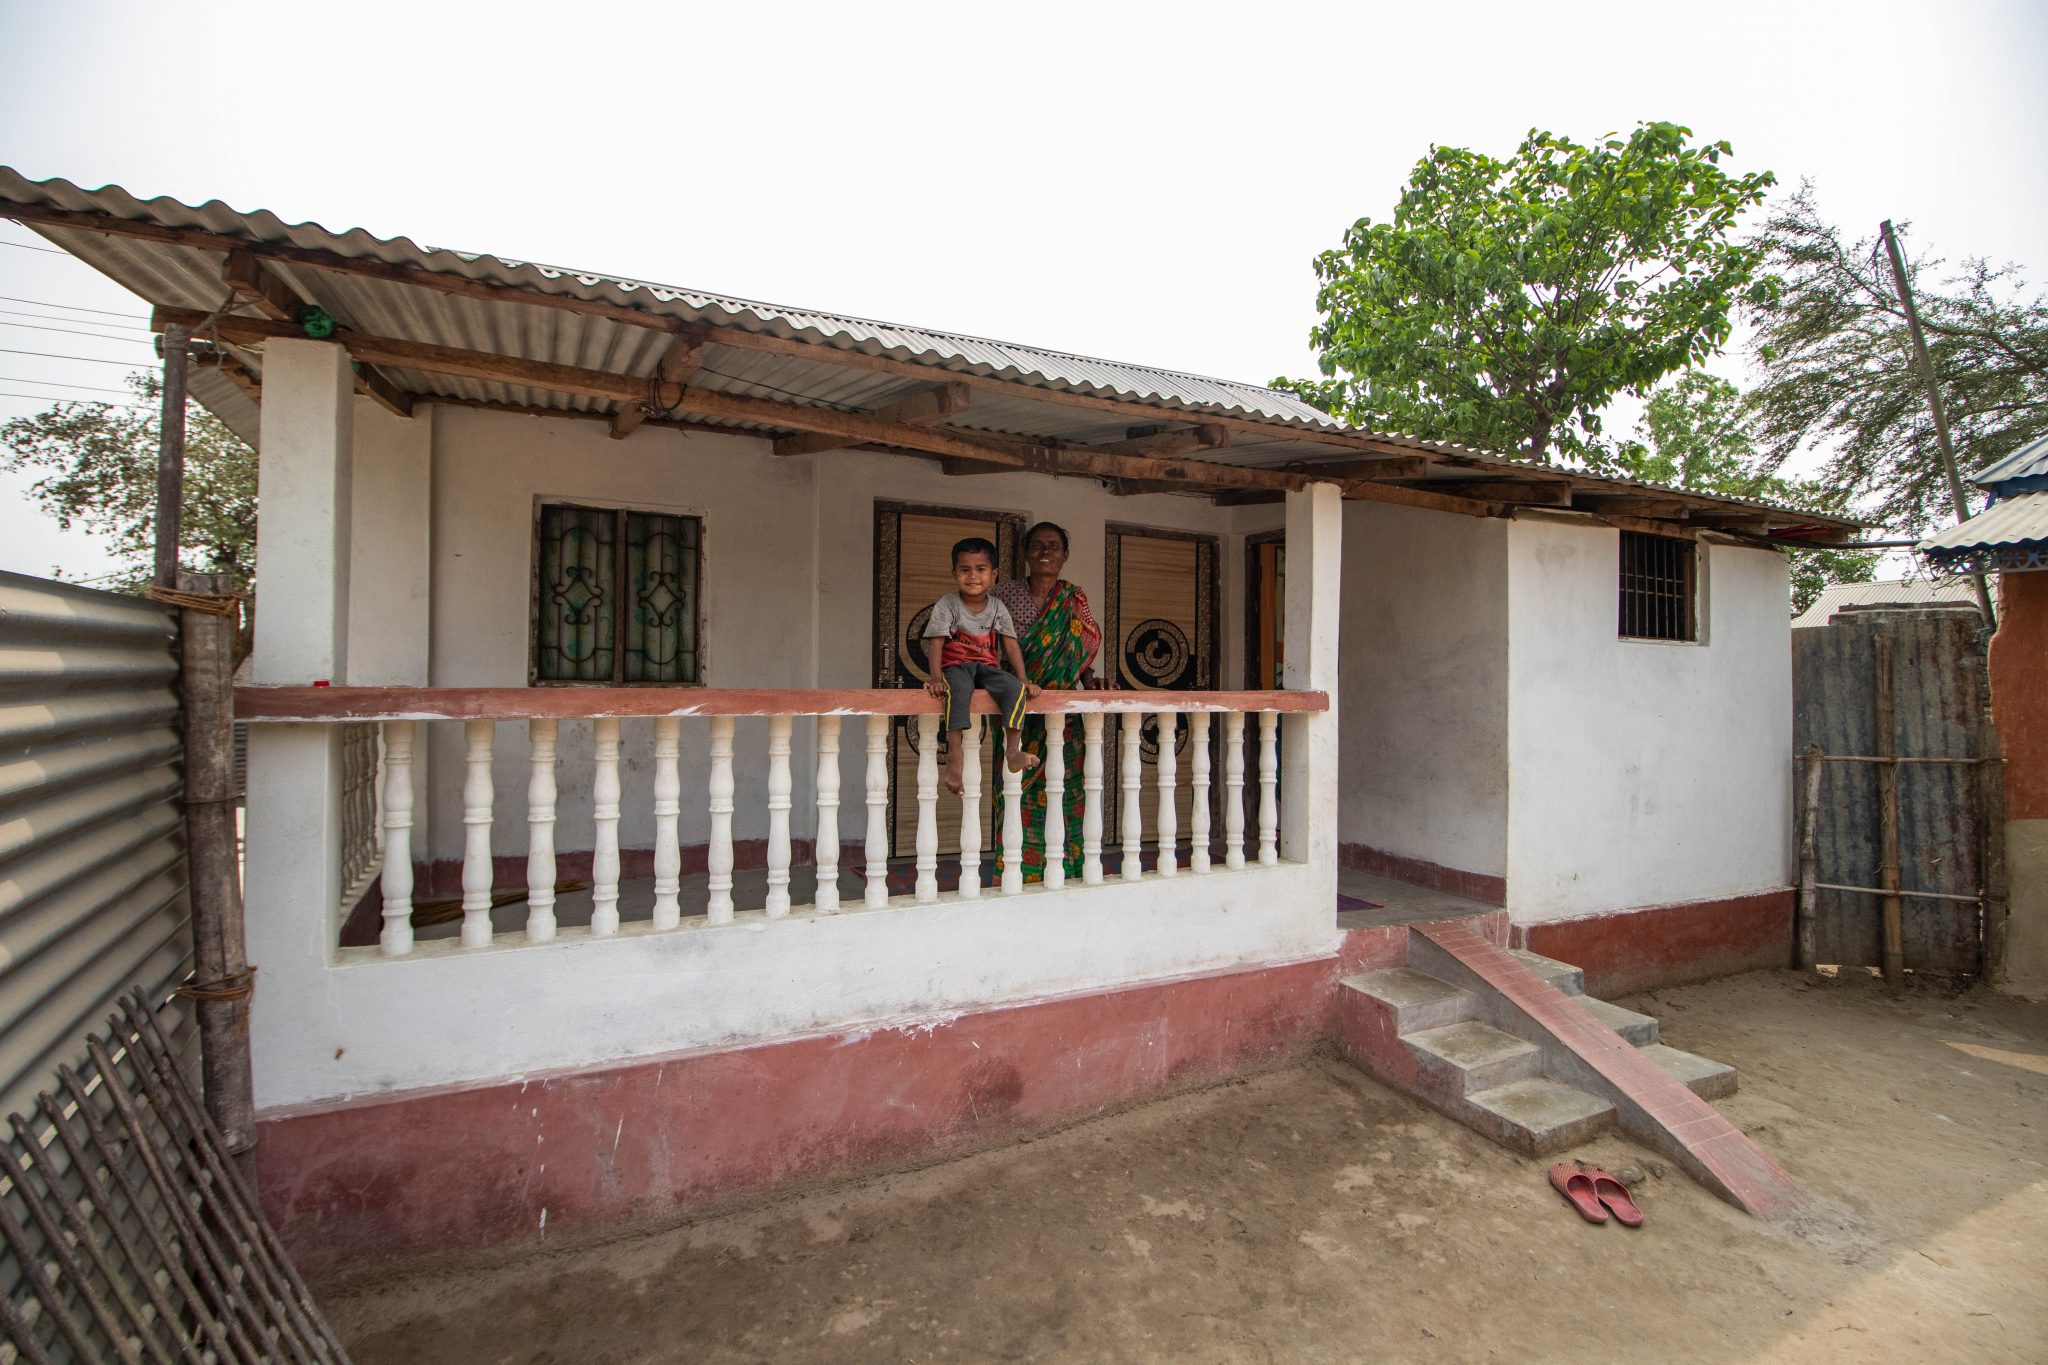 Housing microfinance for women in Nepal